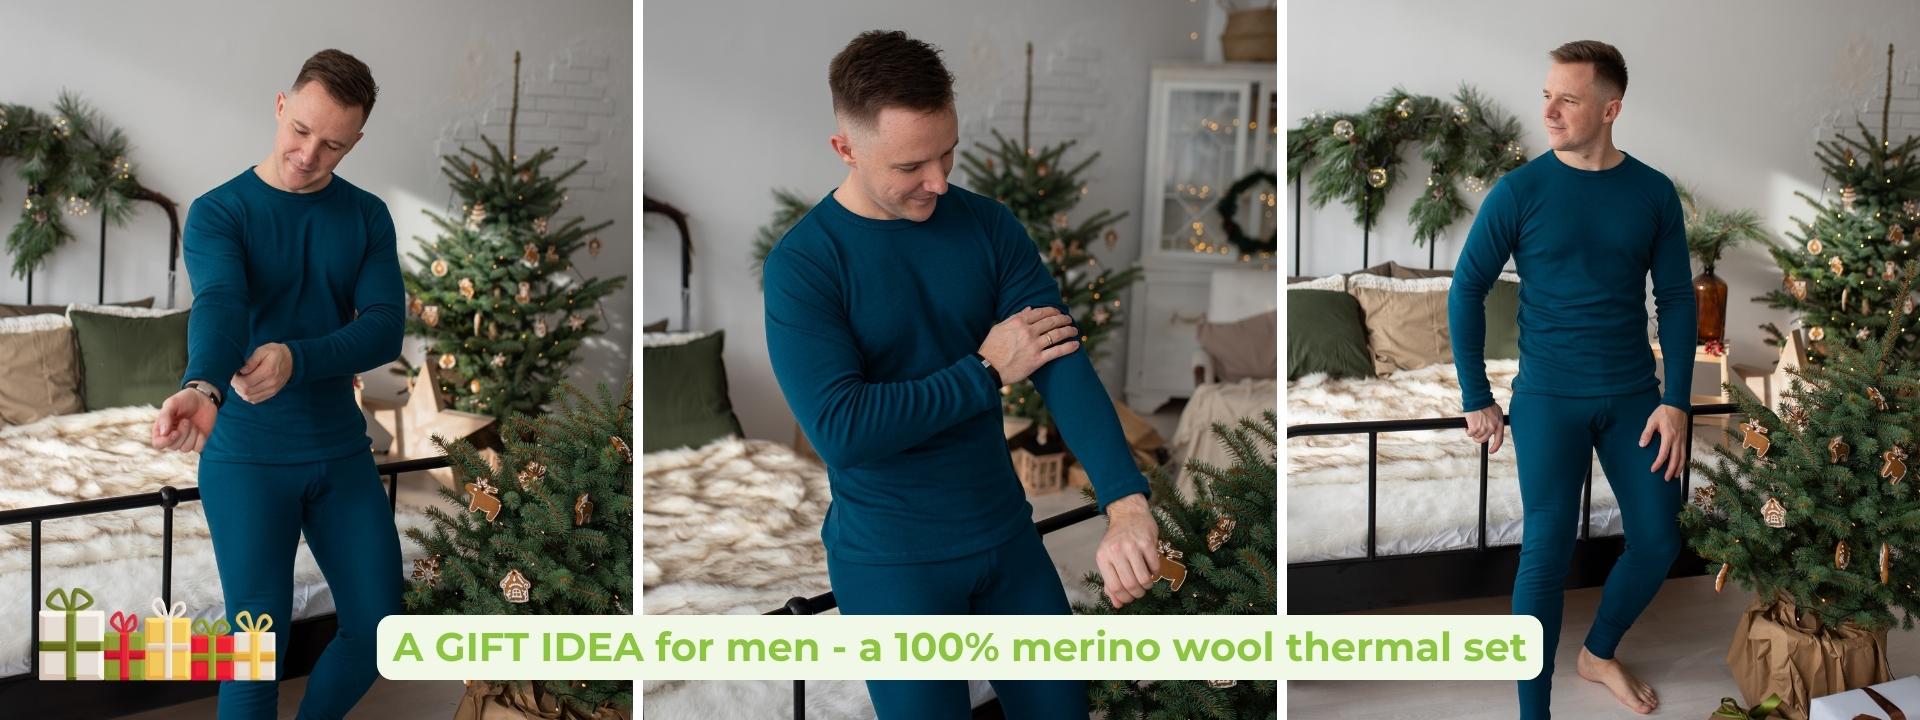 Christmas gift idea for men